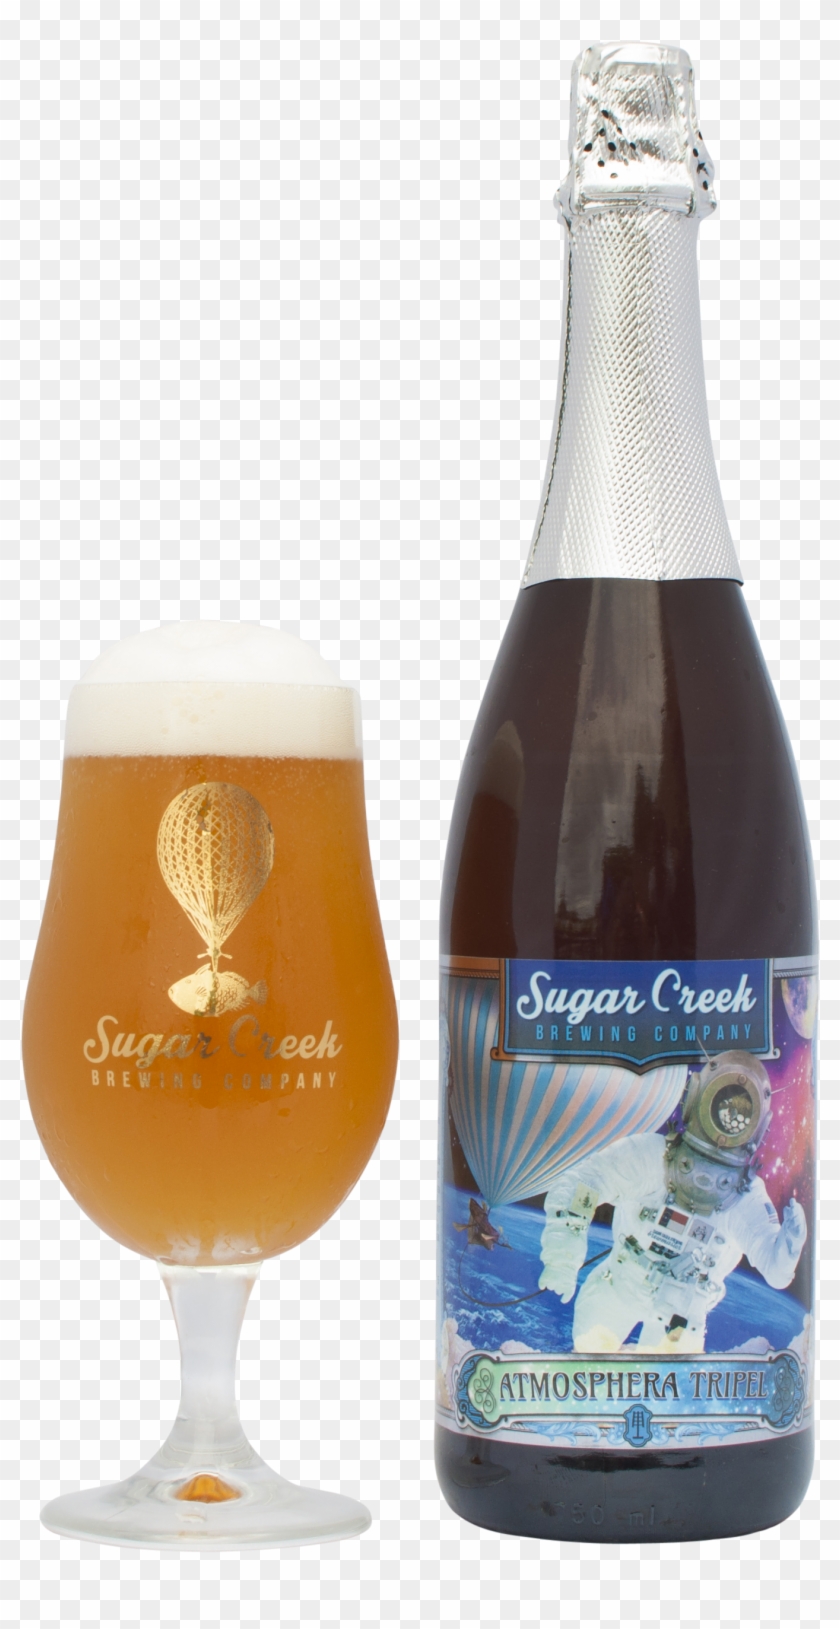 Alcohol Clipart Craft Beer Bottle - Sugar Creek Beer, Belgian-style Tripel, Atmosphera #1325220